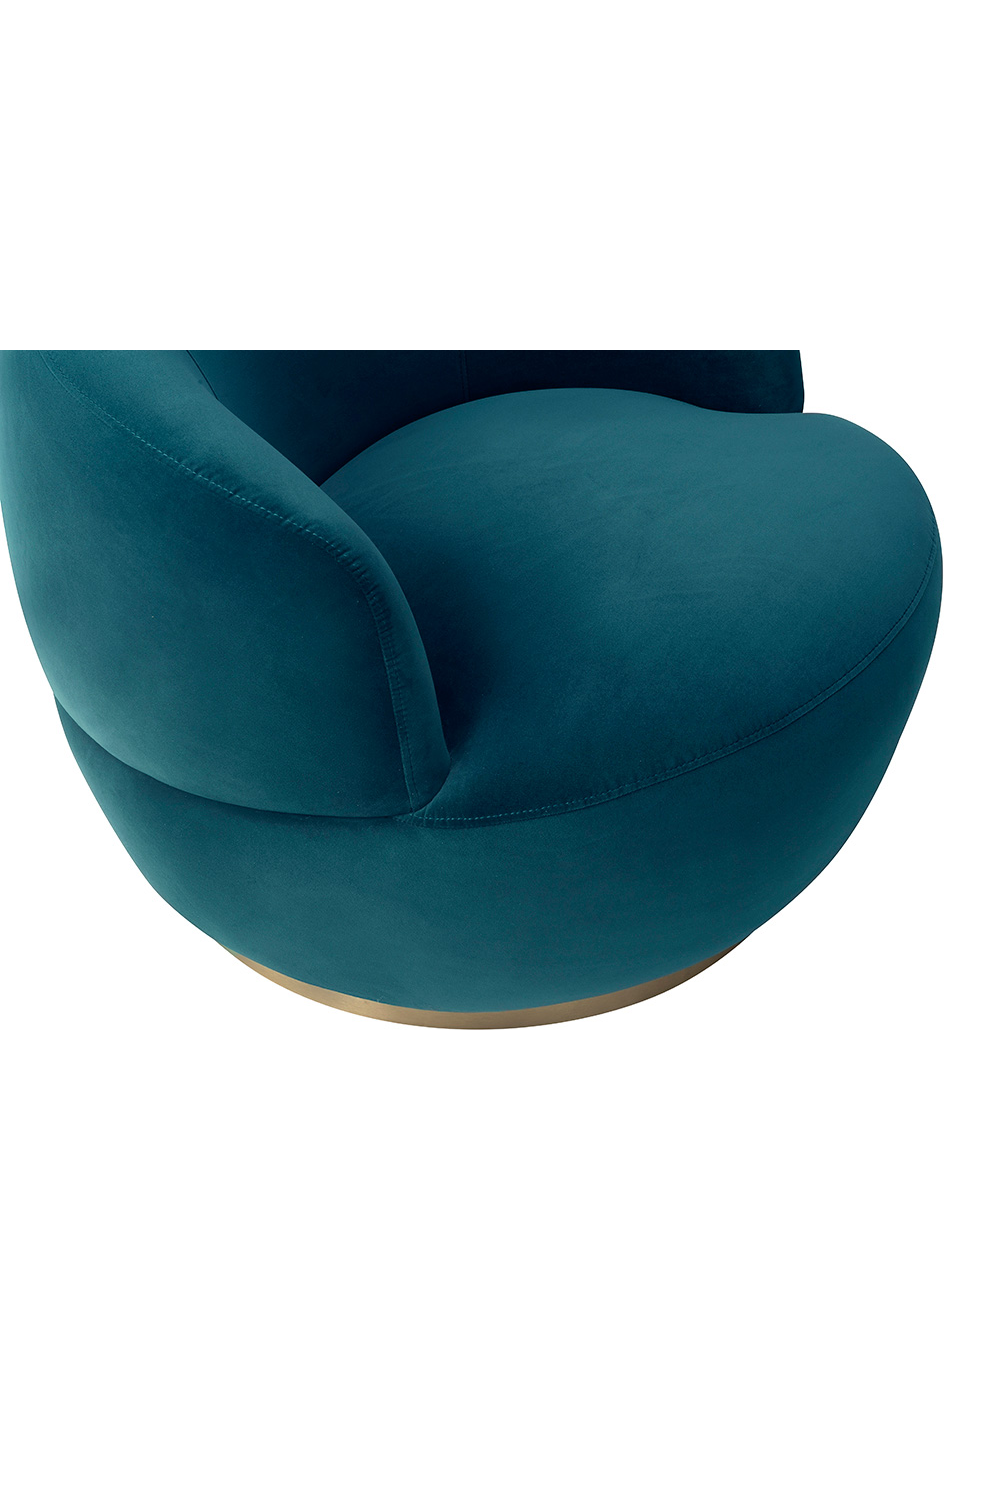 Circular Velvet Swivel Chair | Liang & Eimil Vitale | Oroa.com